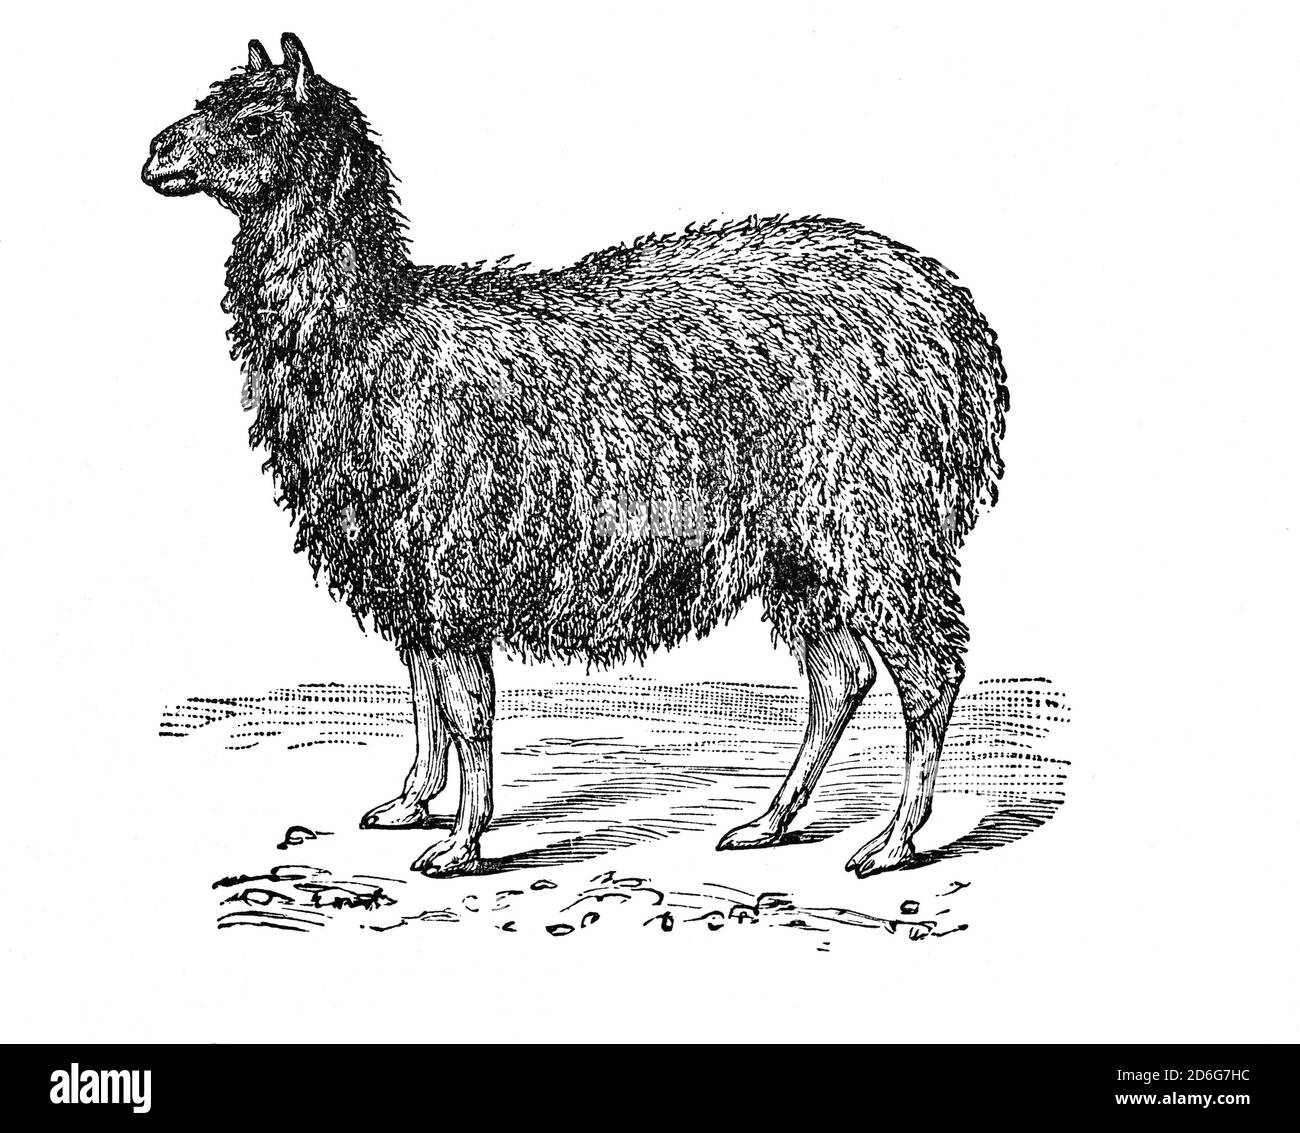 Der Alpaka (Vicugna pacos) ist eine Art südamerikanischer Kameliden, die oft mit dem Lama verwechselt wird. Allerdings werden Alpakas, die merklich kleiner sind als Lamas, in Herden gehalten, die auf den Ebenen Höhen der Anden grasen. Sie wurden speziell für ihre Fasern gezüchtet, die für die Herstellung von gestrickten und gewebten Gegenständen verwendet wurden, ähnlich wie Schafwolle. Stockfoto